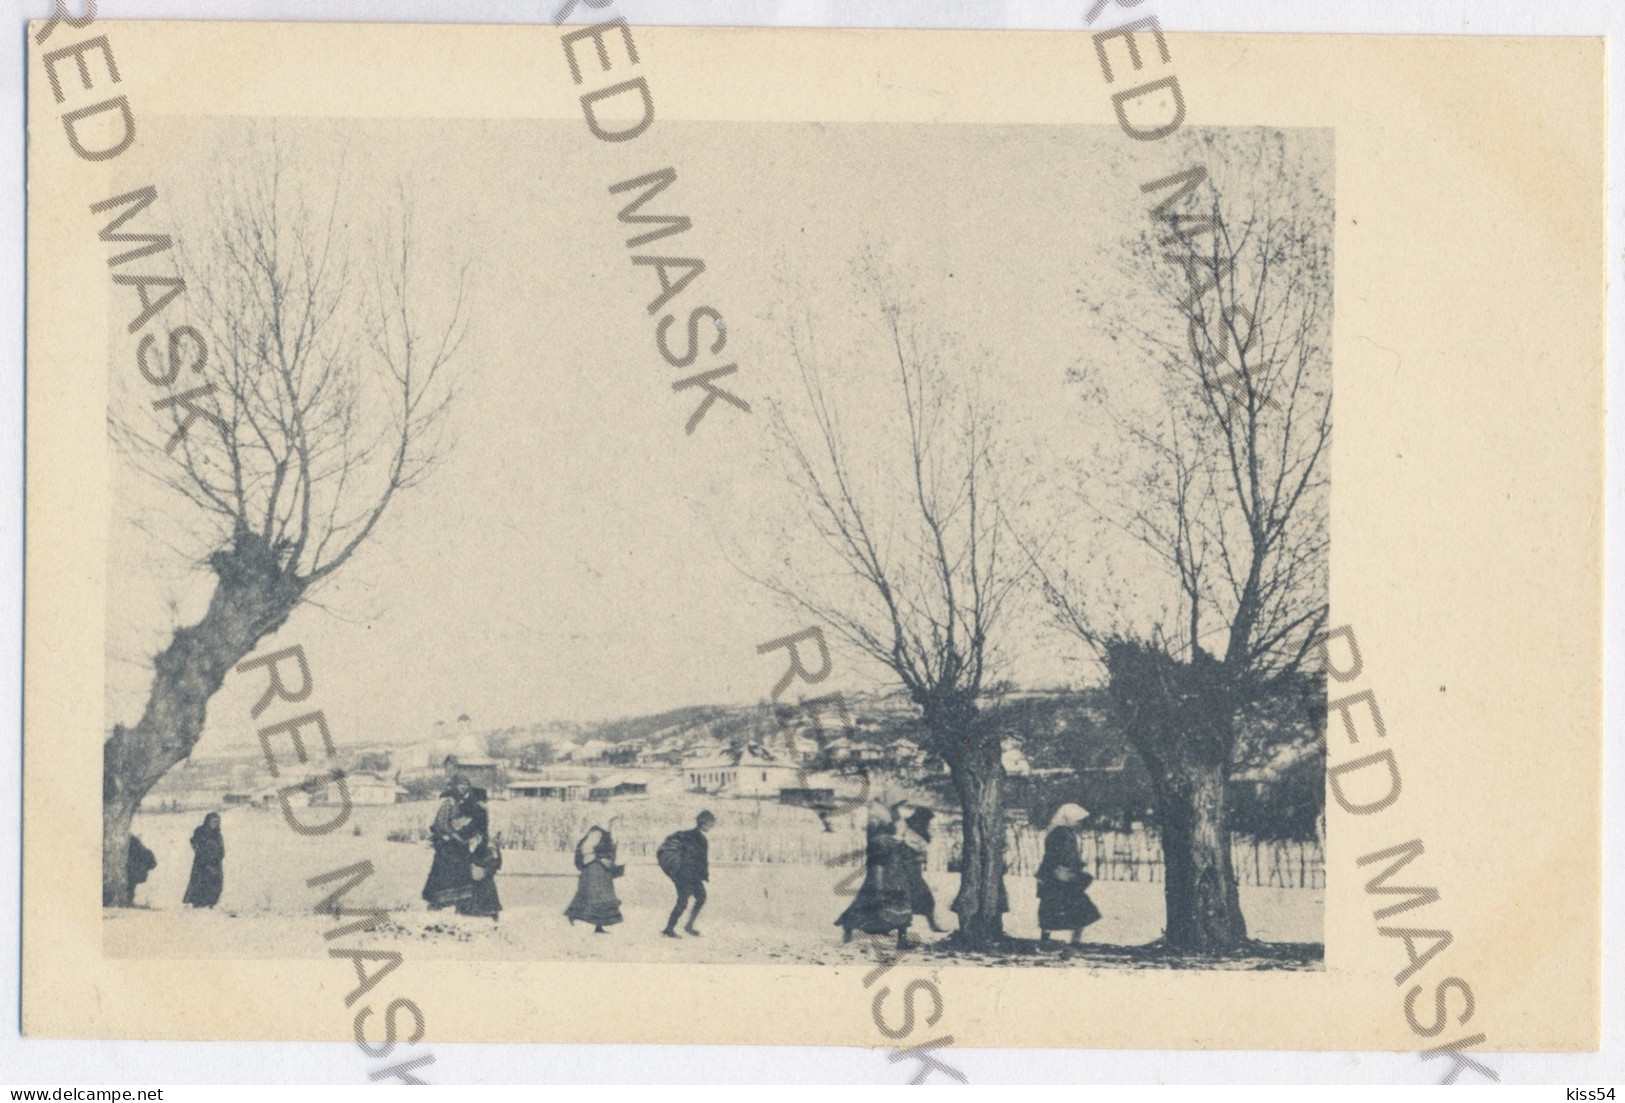 RO 84 - 11505 VLASCA, Teleorman, Serb Refugees, Romania - Old Postcard - Unused - Rumänien